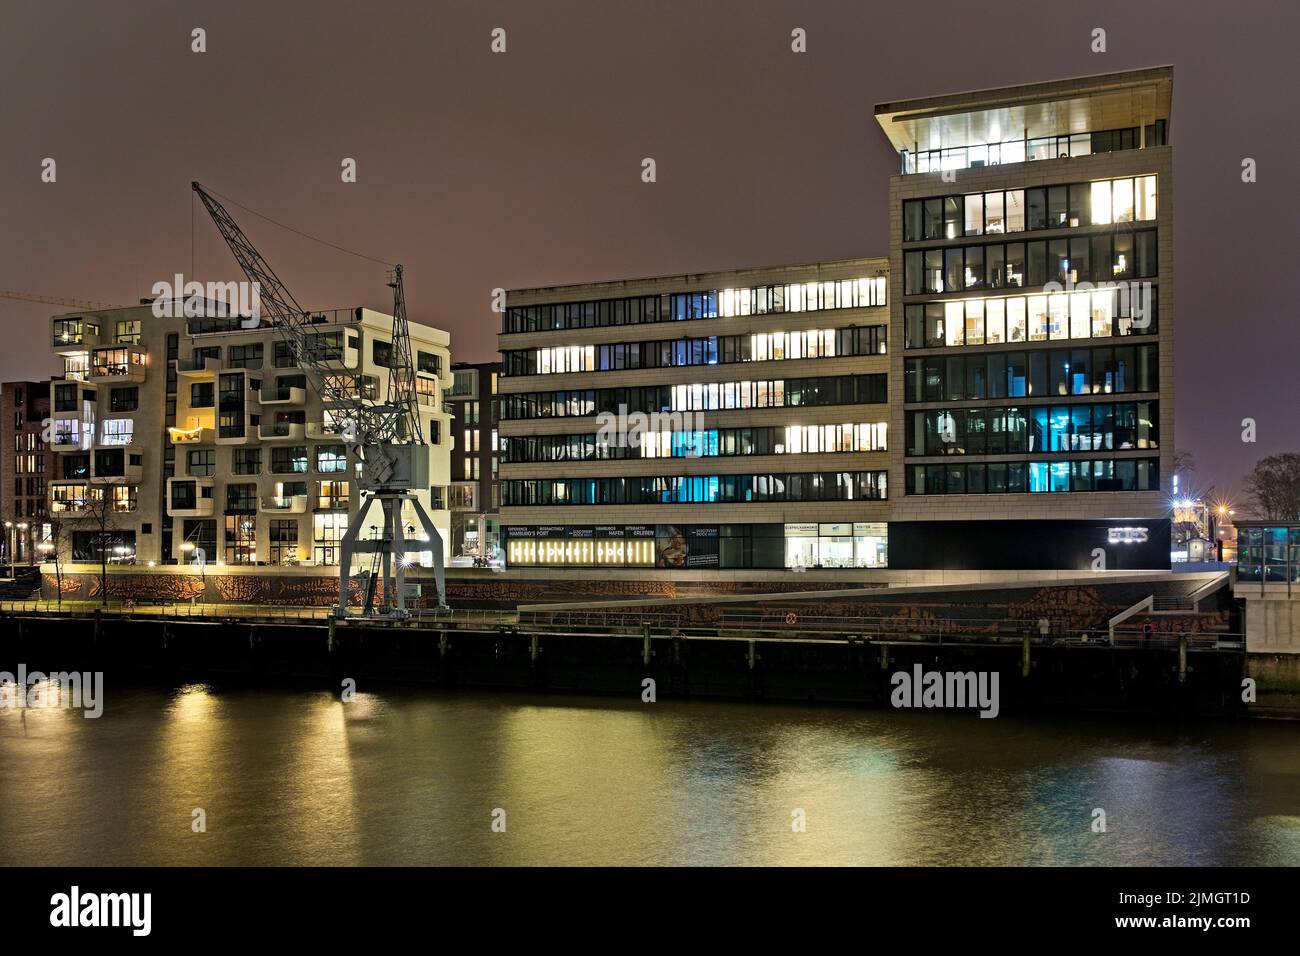 Kaiserkai at night, HafenCity, Hamburg, Germany, Europe Stock Photo